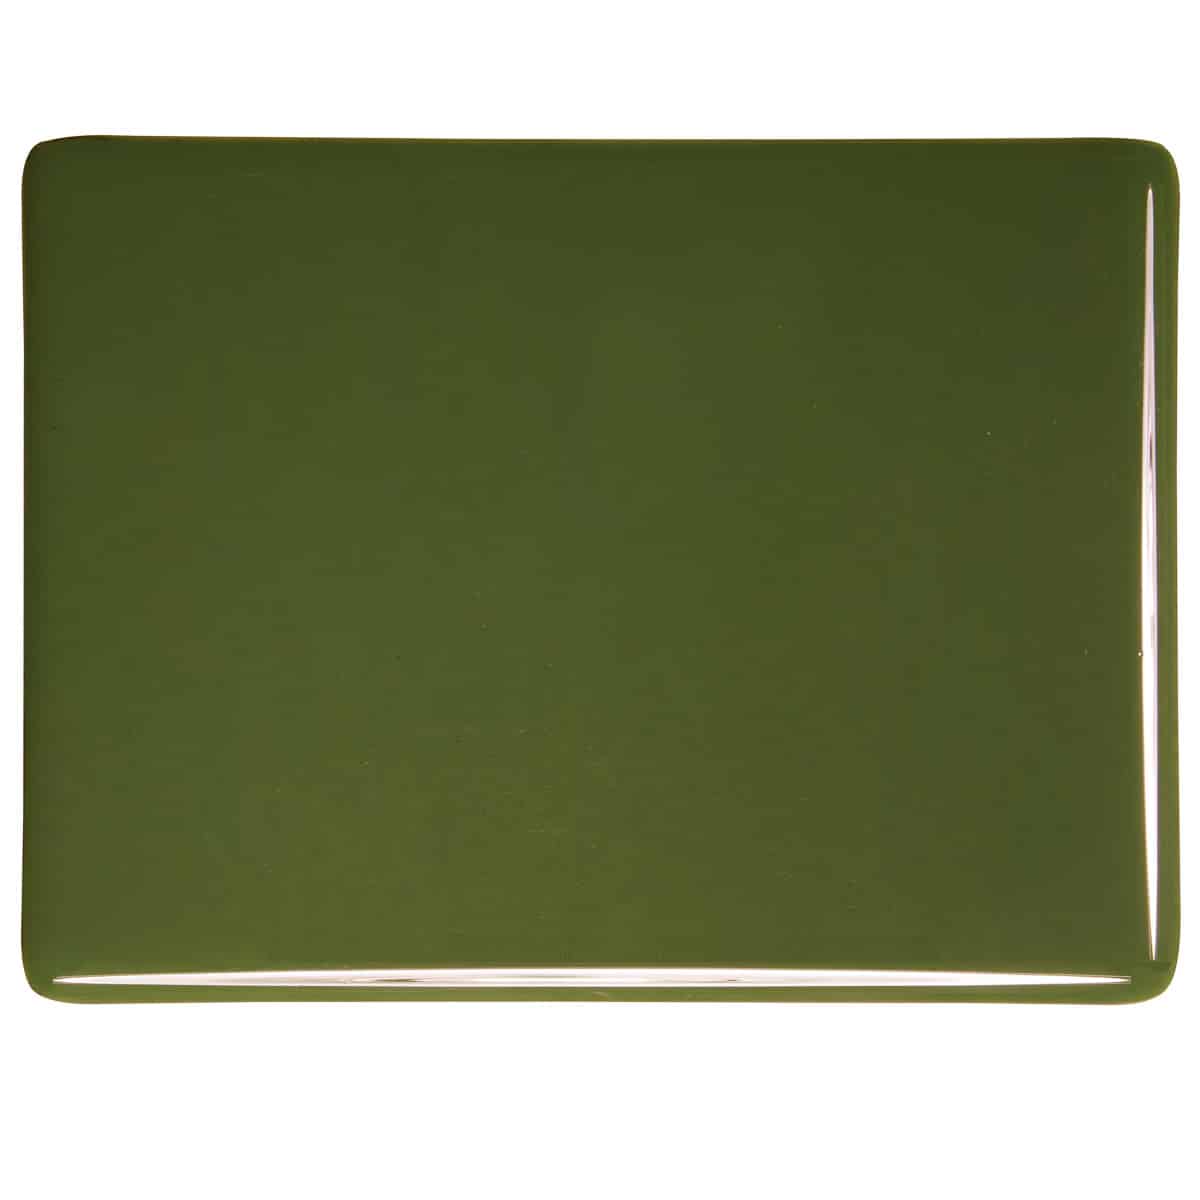 Moss Green Opal sheet glass swatch